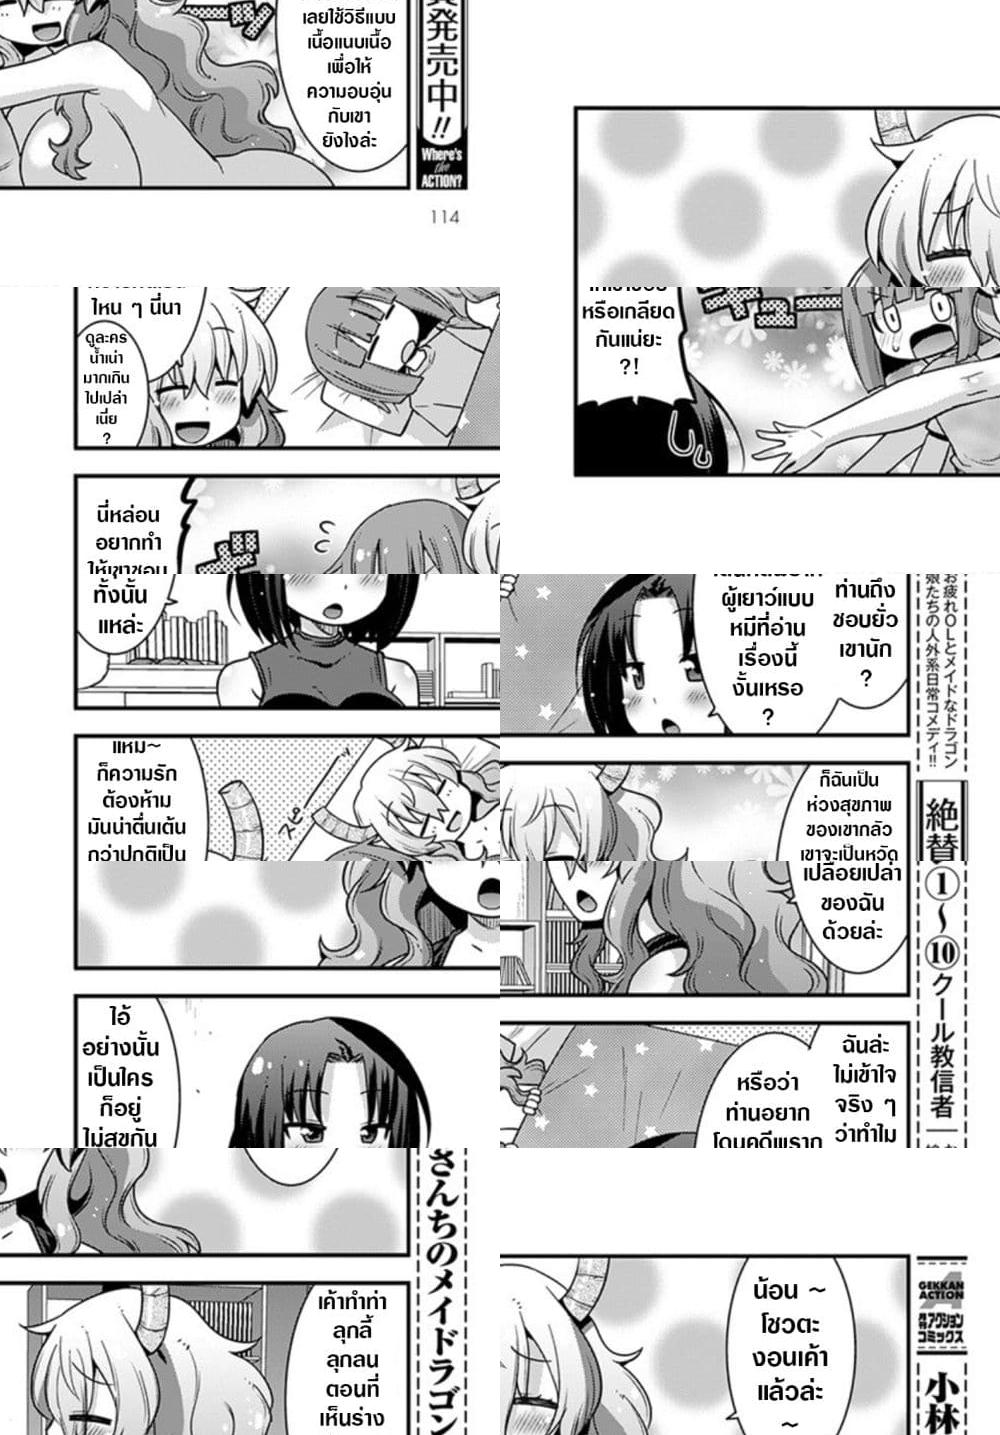 Miss Kobayashi's Dragon Maid: Lucoa is my xx - 20 - 2